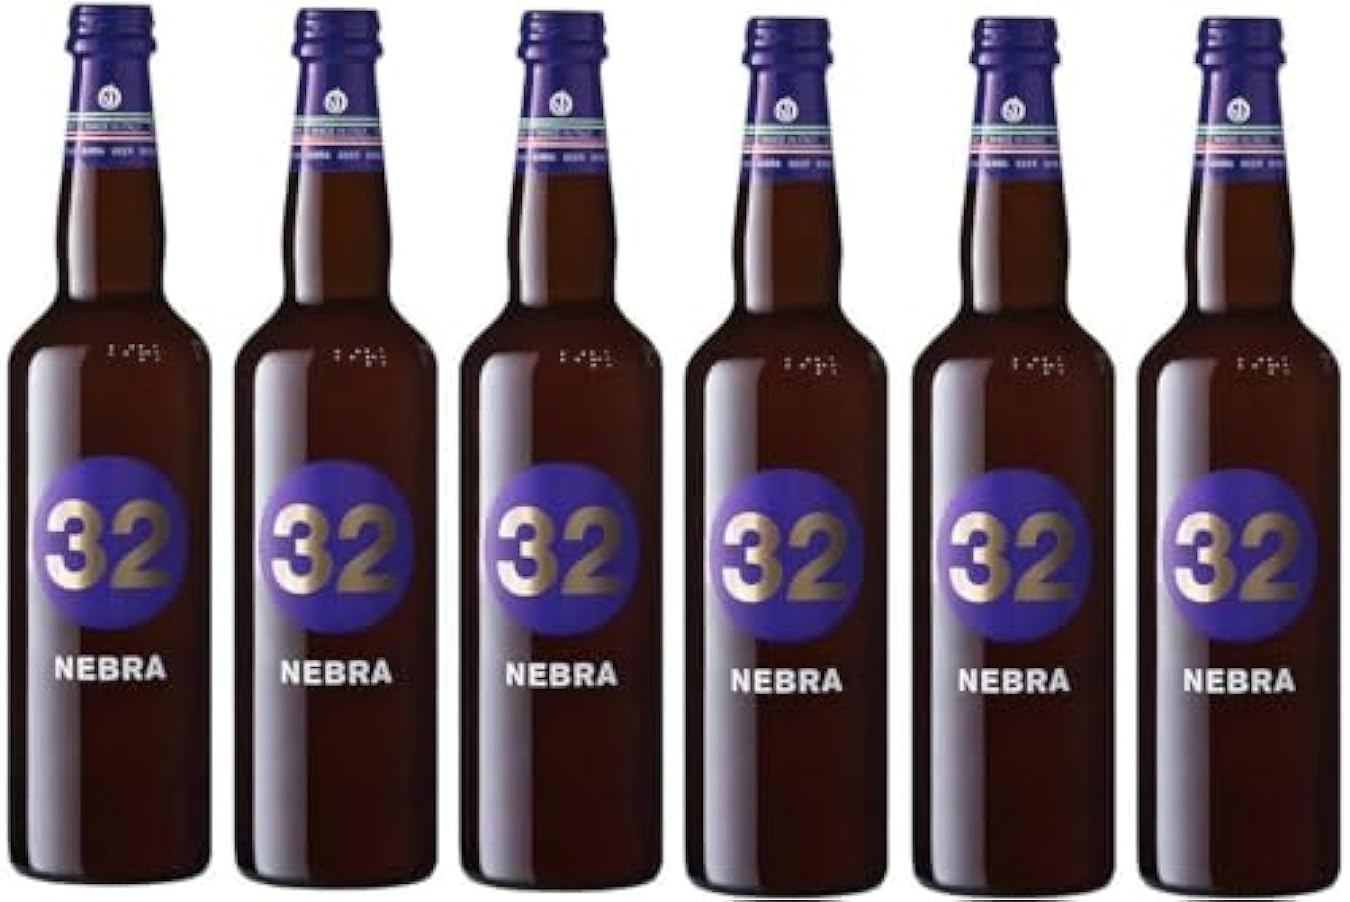 32 Via dei Birrai – Nebra - Birra ambrata dolce con fio